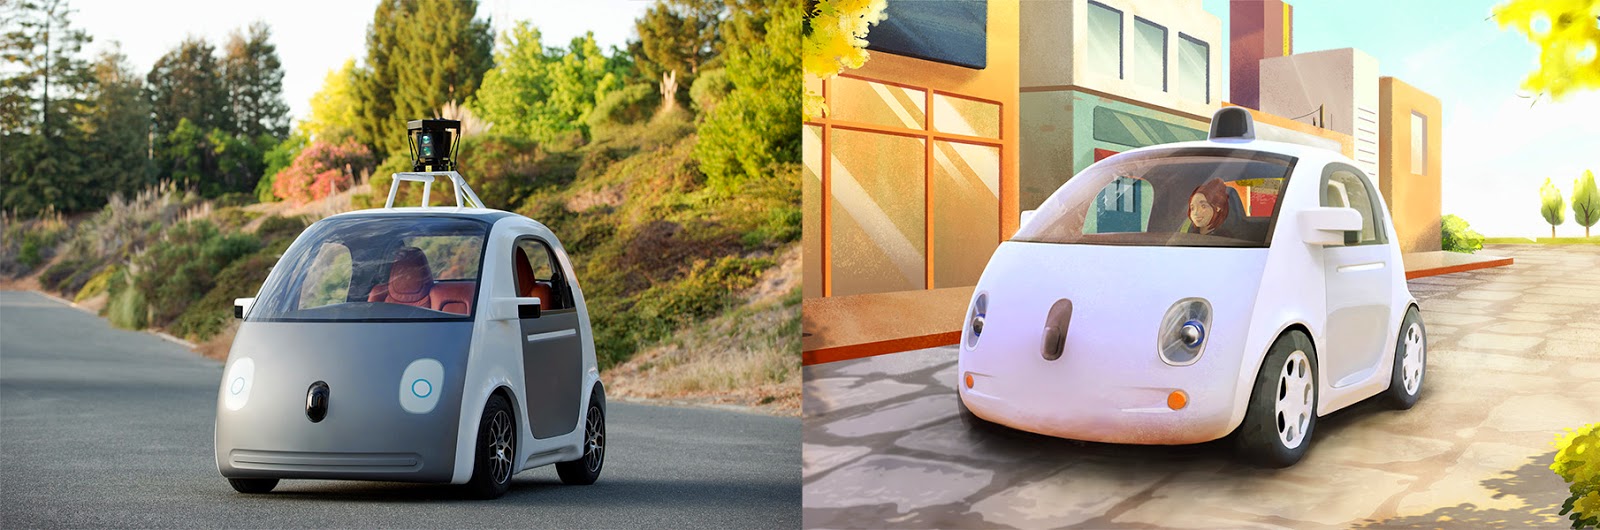 Google a voulu pousser le concept de voiture autonome jusqu’à concevoir son propre modèle. À droite, une version dessinée du projet, à gauche, le tout premier prototype qui vient d’être dévoilé. Google compte fabriquer une centaine de ces drôles de petites voitures pour poursuivre le projet. © Google